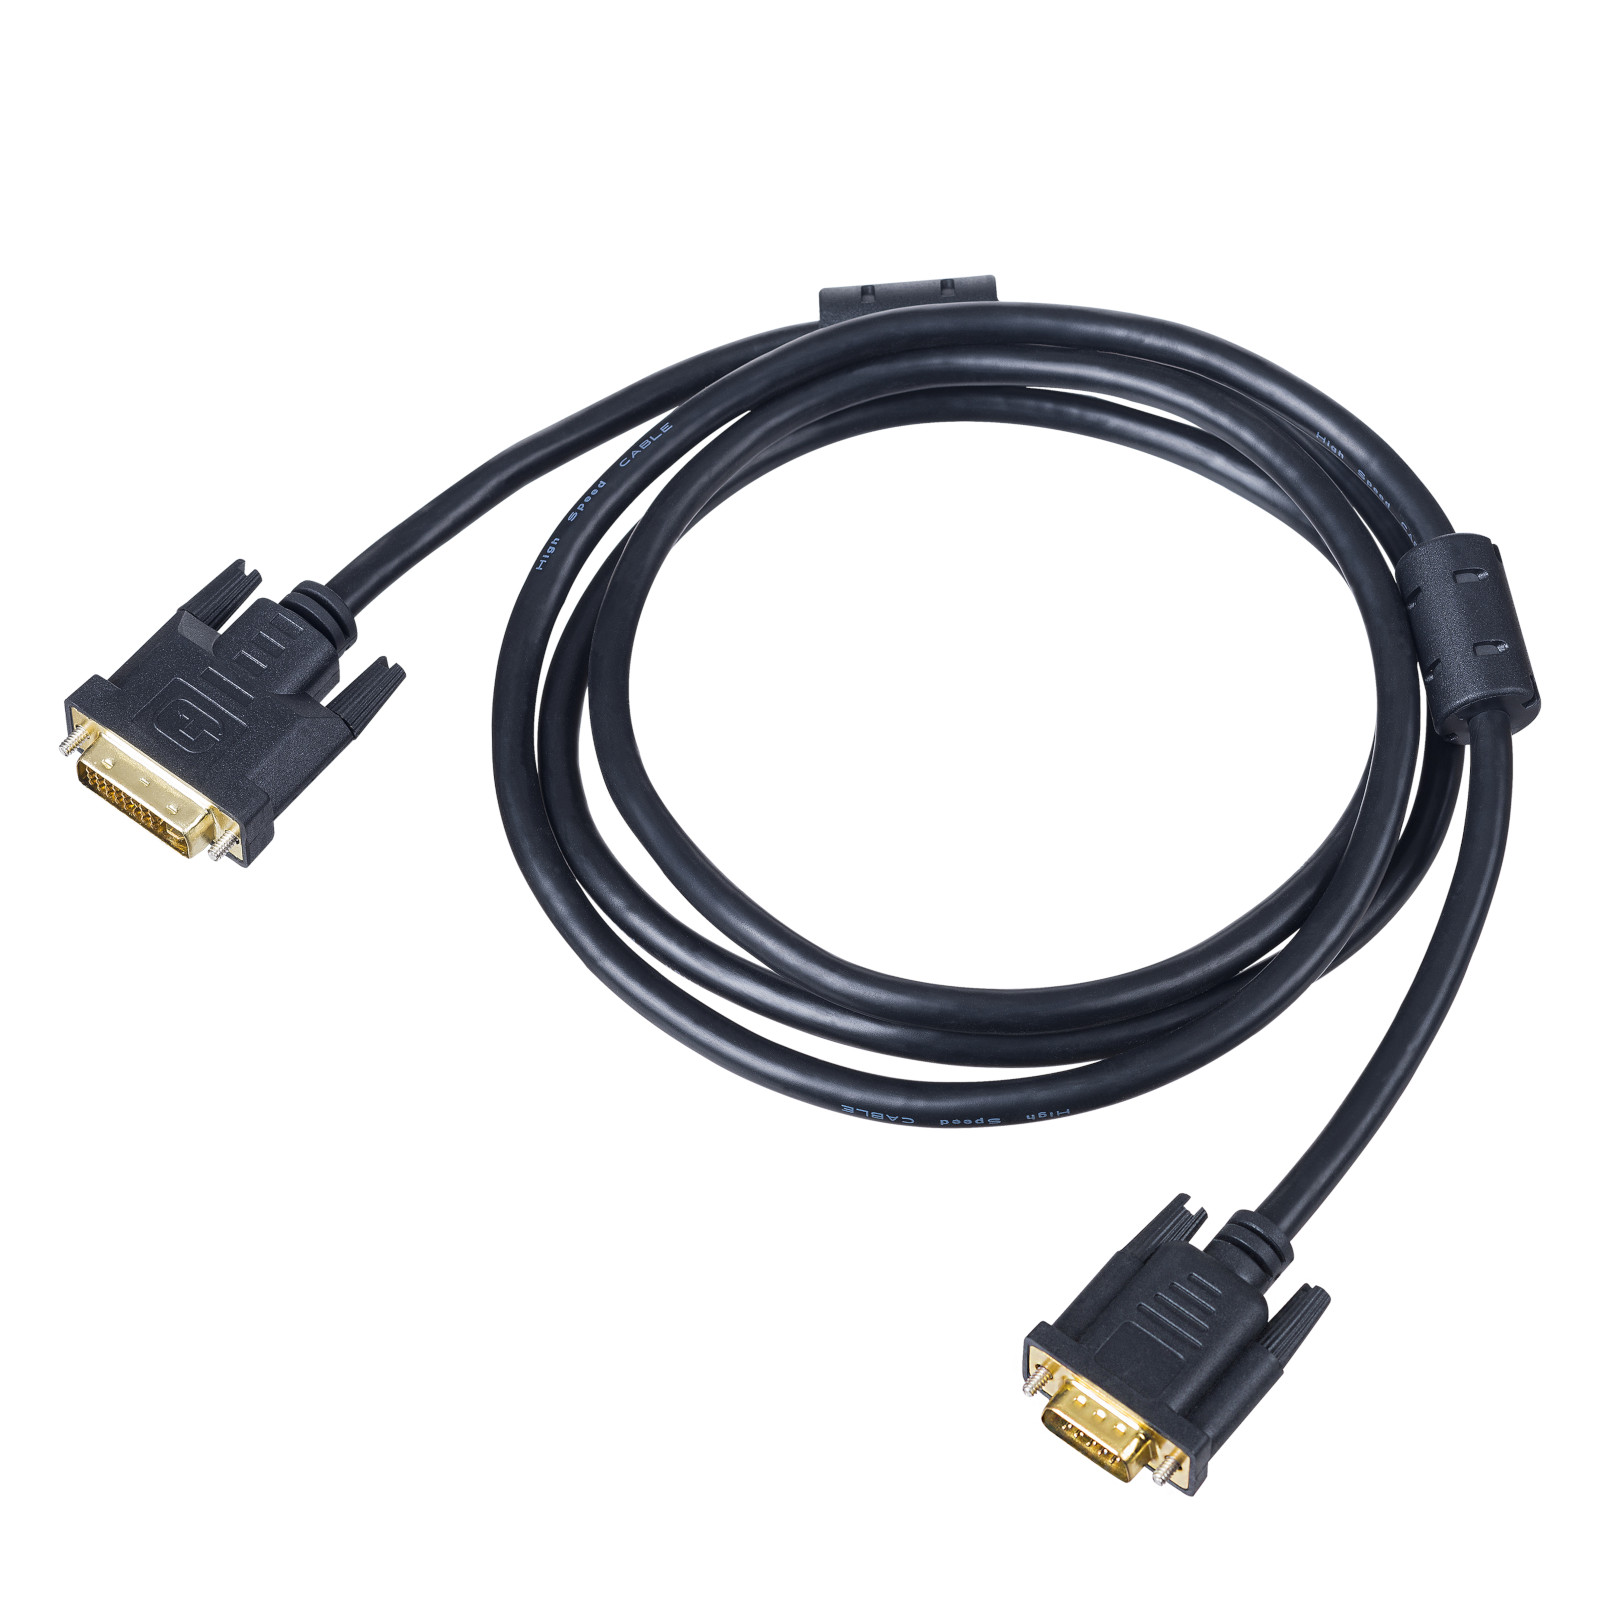 Main image Cable DVI 24+5 / VGA AK-AV-03 1.8m